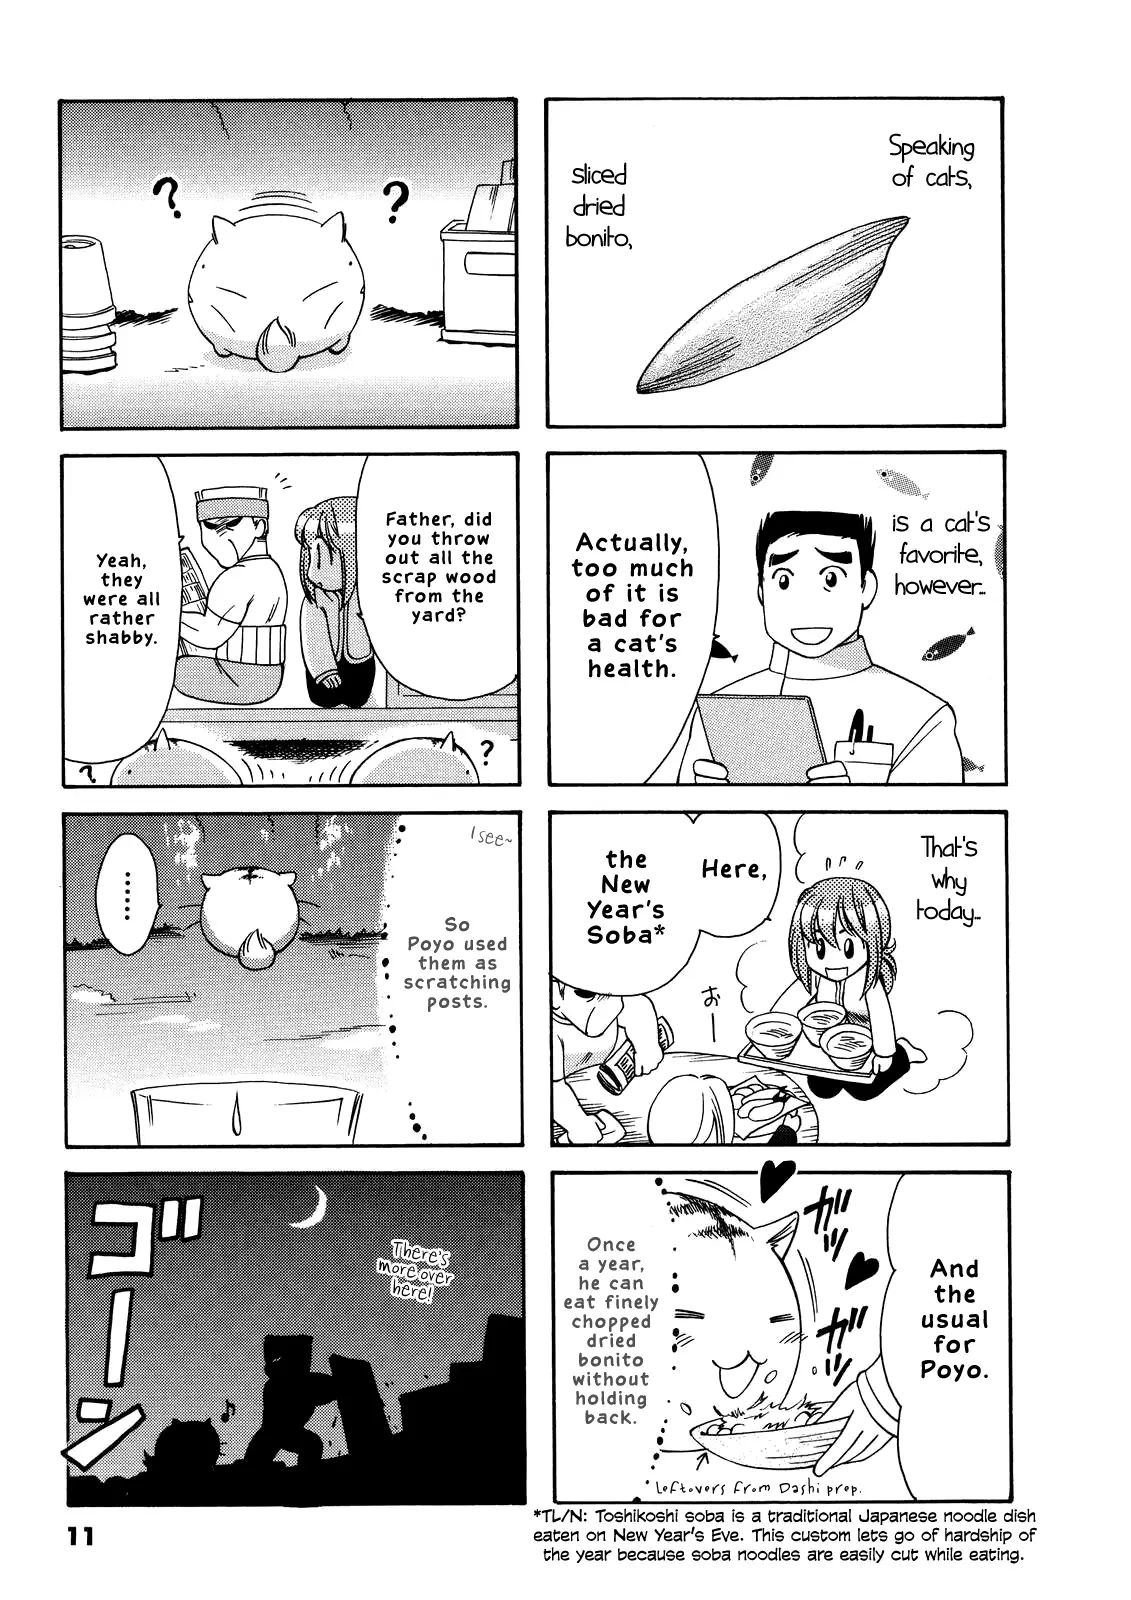 Poyopoyo Kansatsu Nikki - 43 page 11